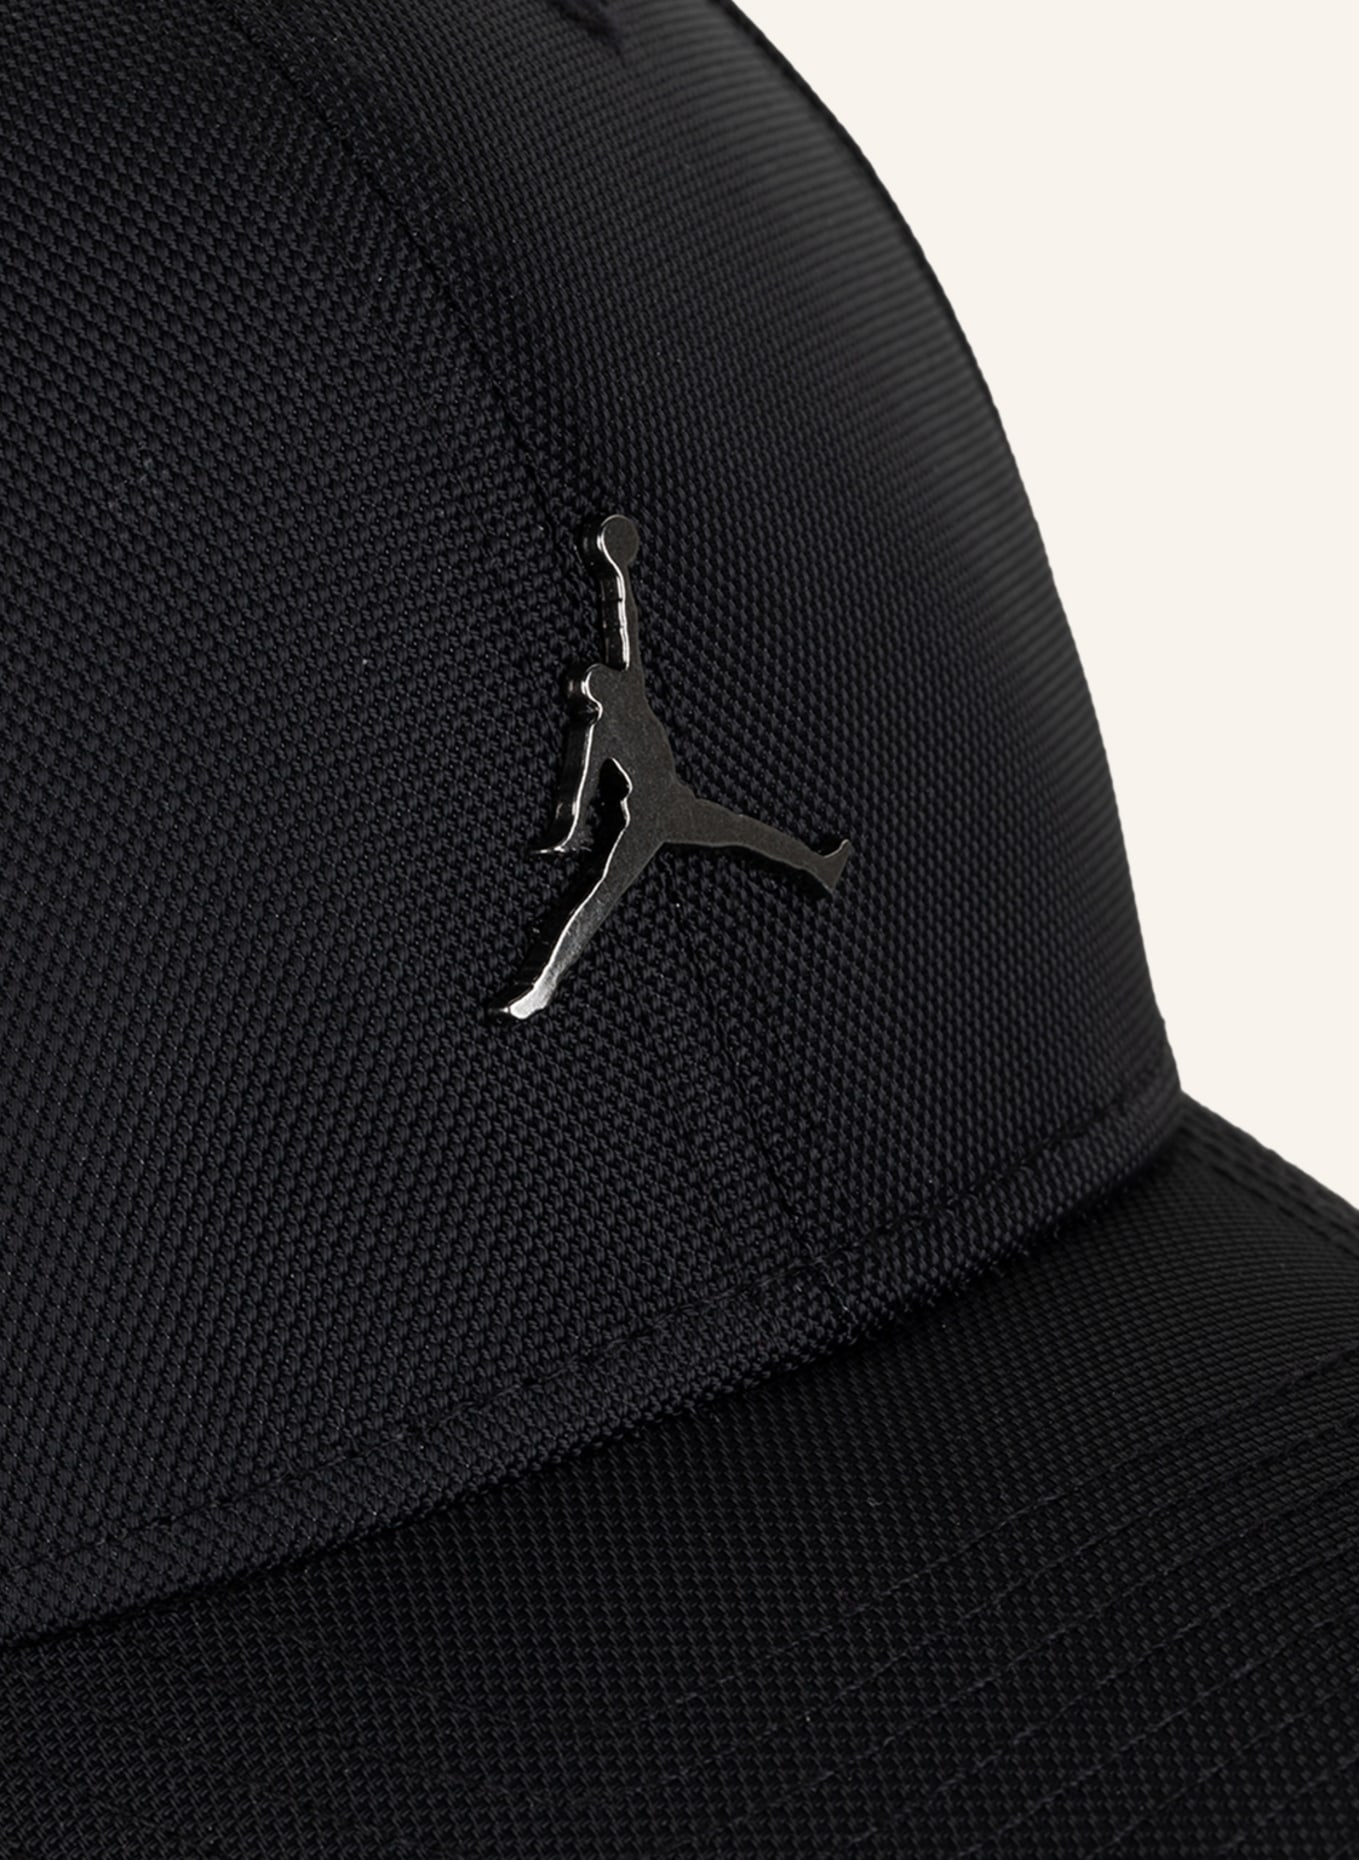 Nike Jordan Clc99 Metal Jm Chapeau pour homme Noir Taille unique UE :  : Mode